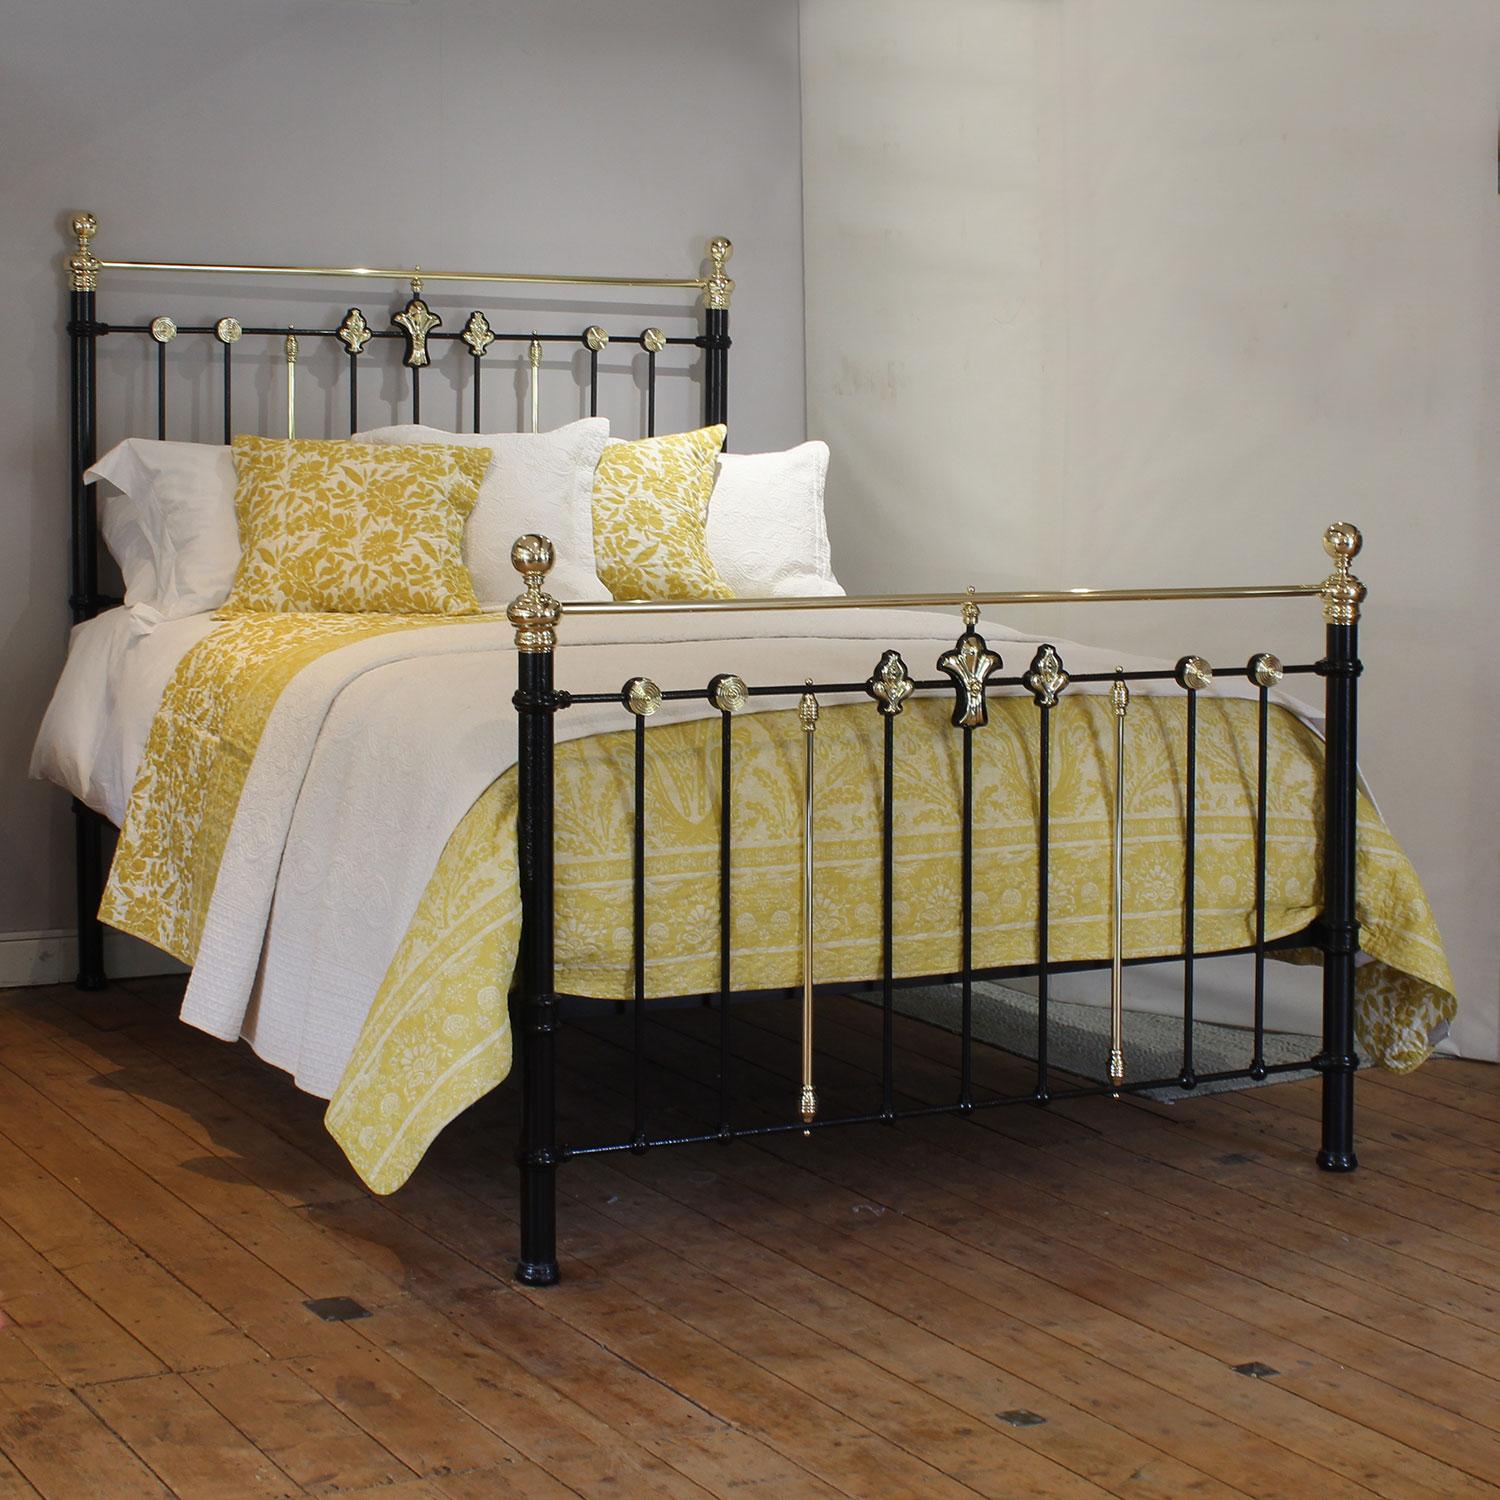 Ein prächtiges antikes Bett aus Gusseisen in schwarzer Farbe mit dekorativen Jugendstil-Rosetten an Kopf- und Fußteil.

Dieses Bett kann mit einem UK-King-Size- oder US-Queen-Size-Matratzen-Set (5ft, 60in oder 150cm breit) ausgestattet werden.

Im